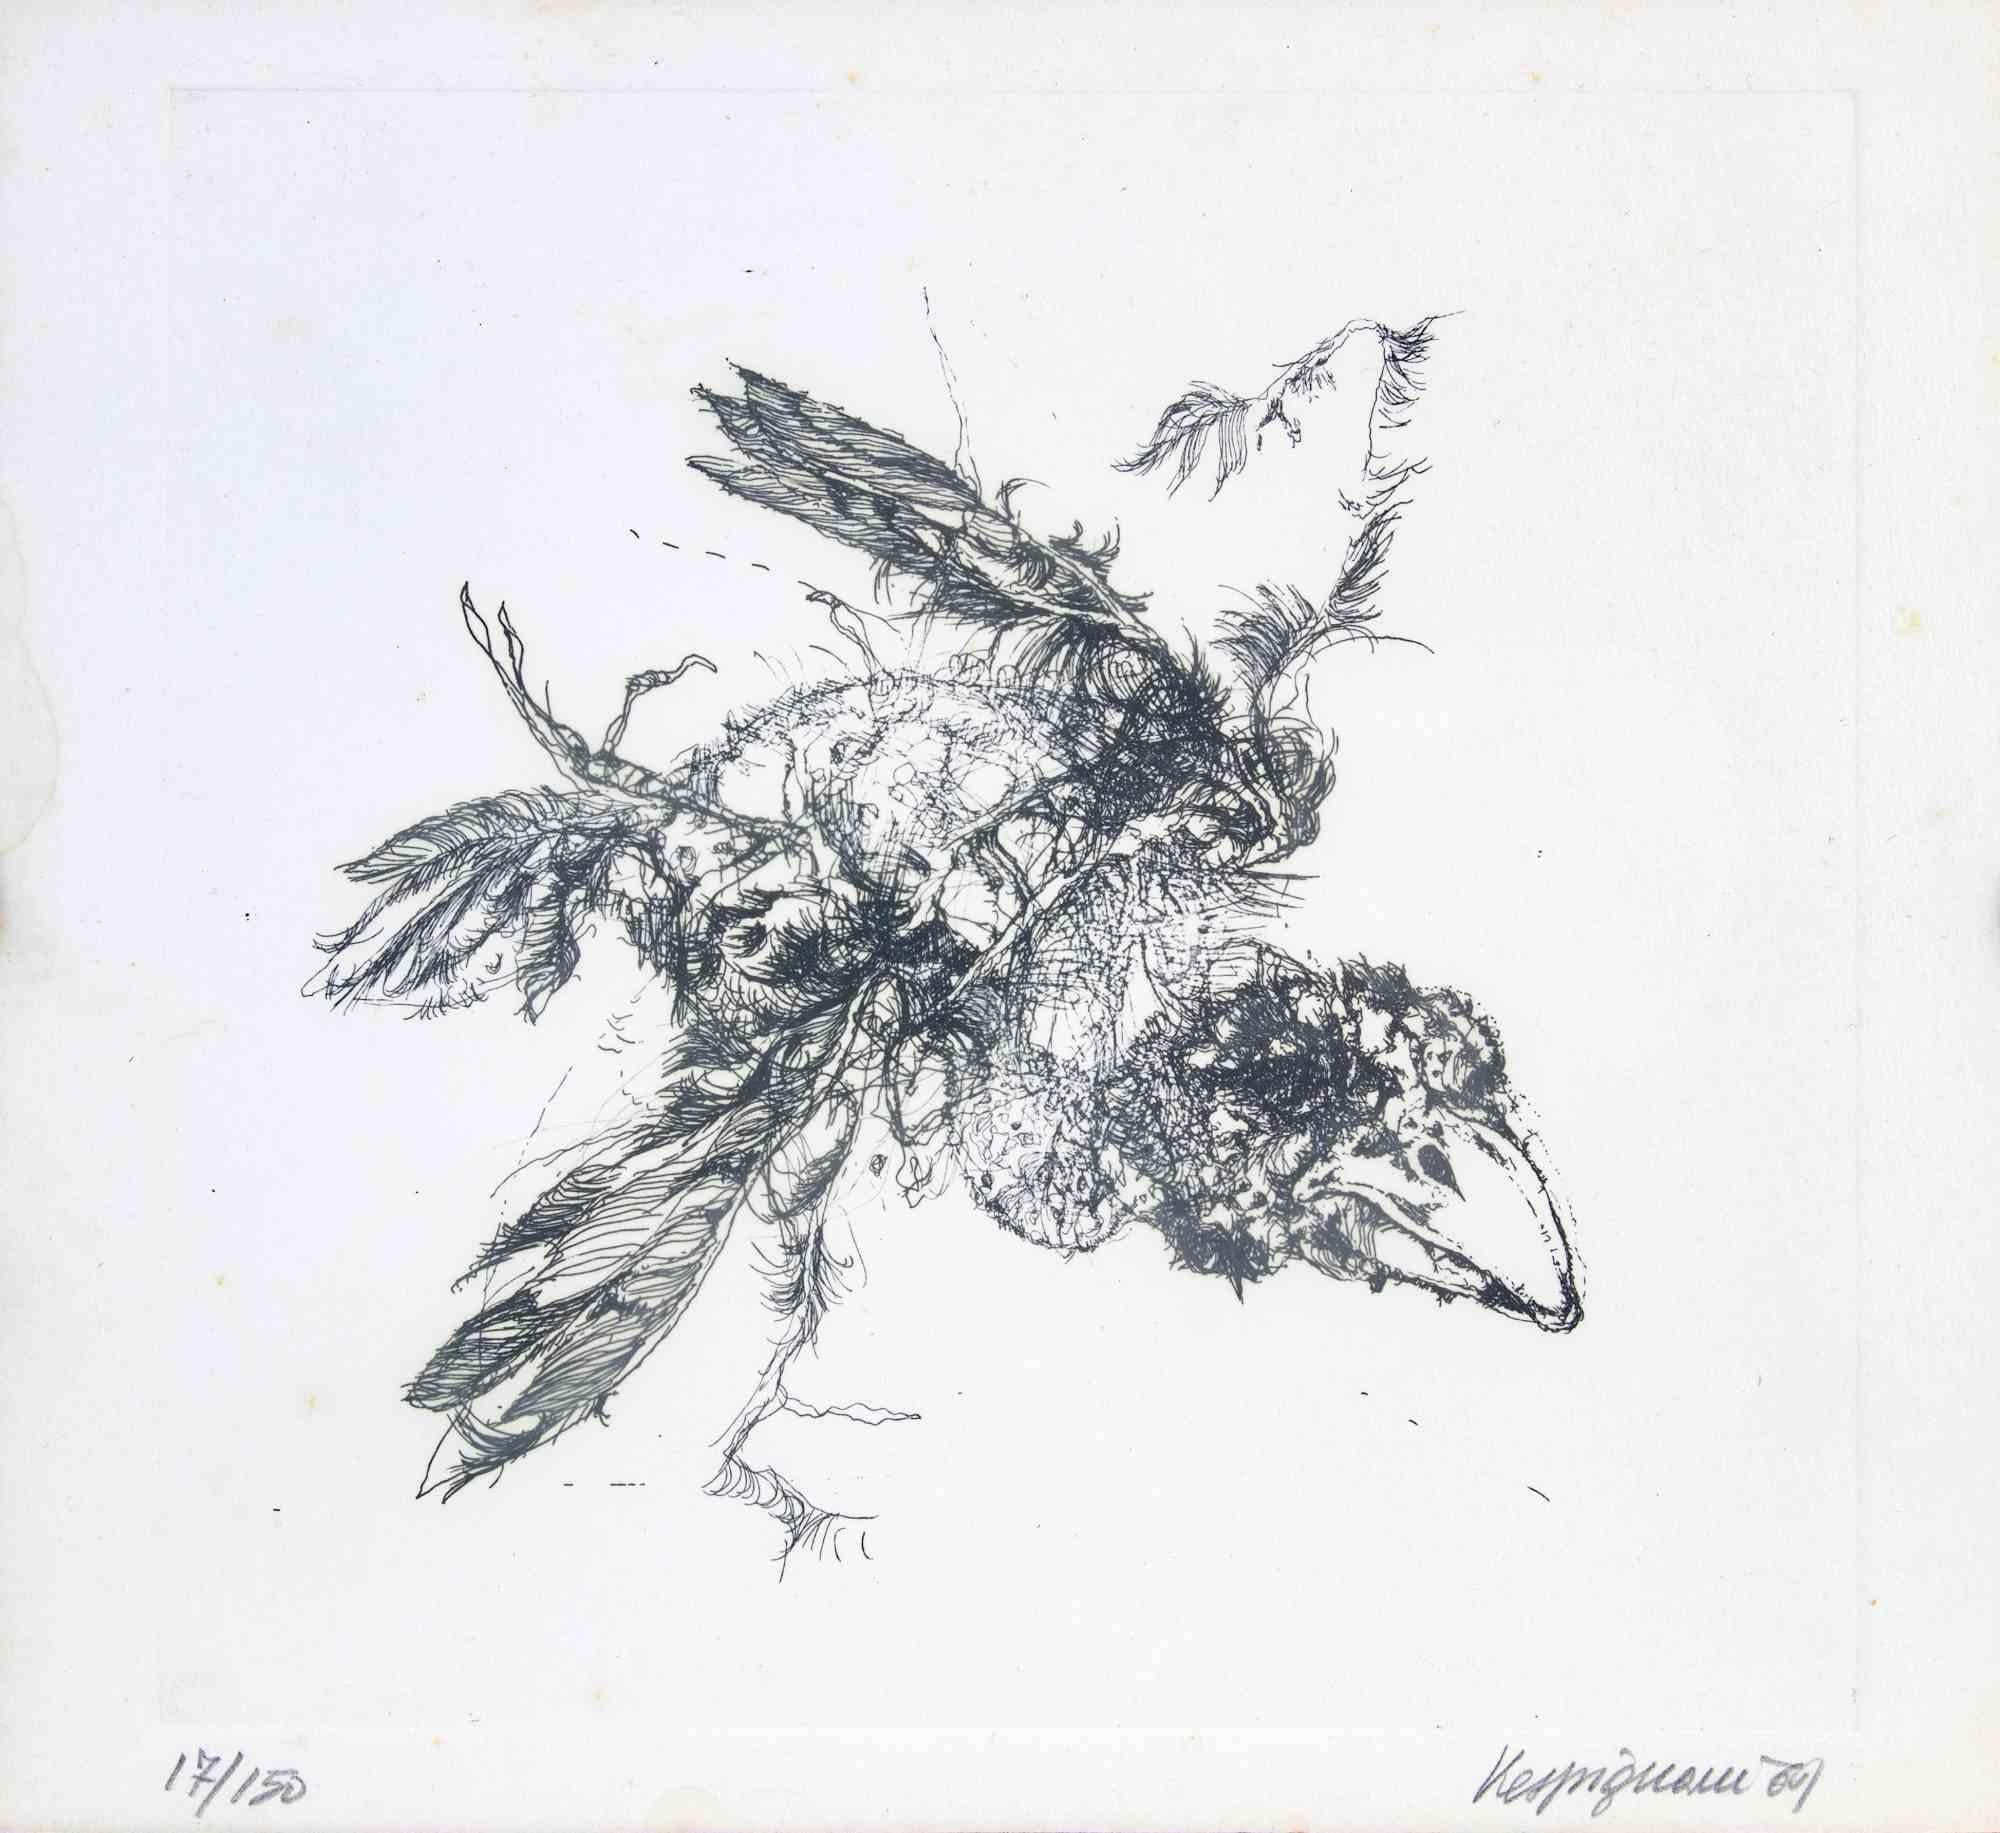 Bird est une œuvre d'art moderne réalisée par Renzo Vespignani en 1969.

Lithographie en noir et blanc.

Signé à la main, daté et numéroté dans la marge inférieure.

Édition de 17/50.